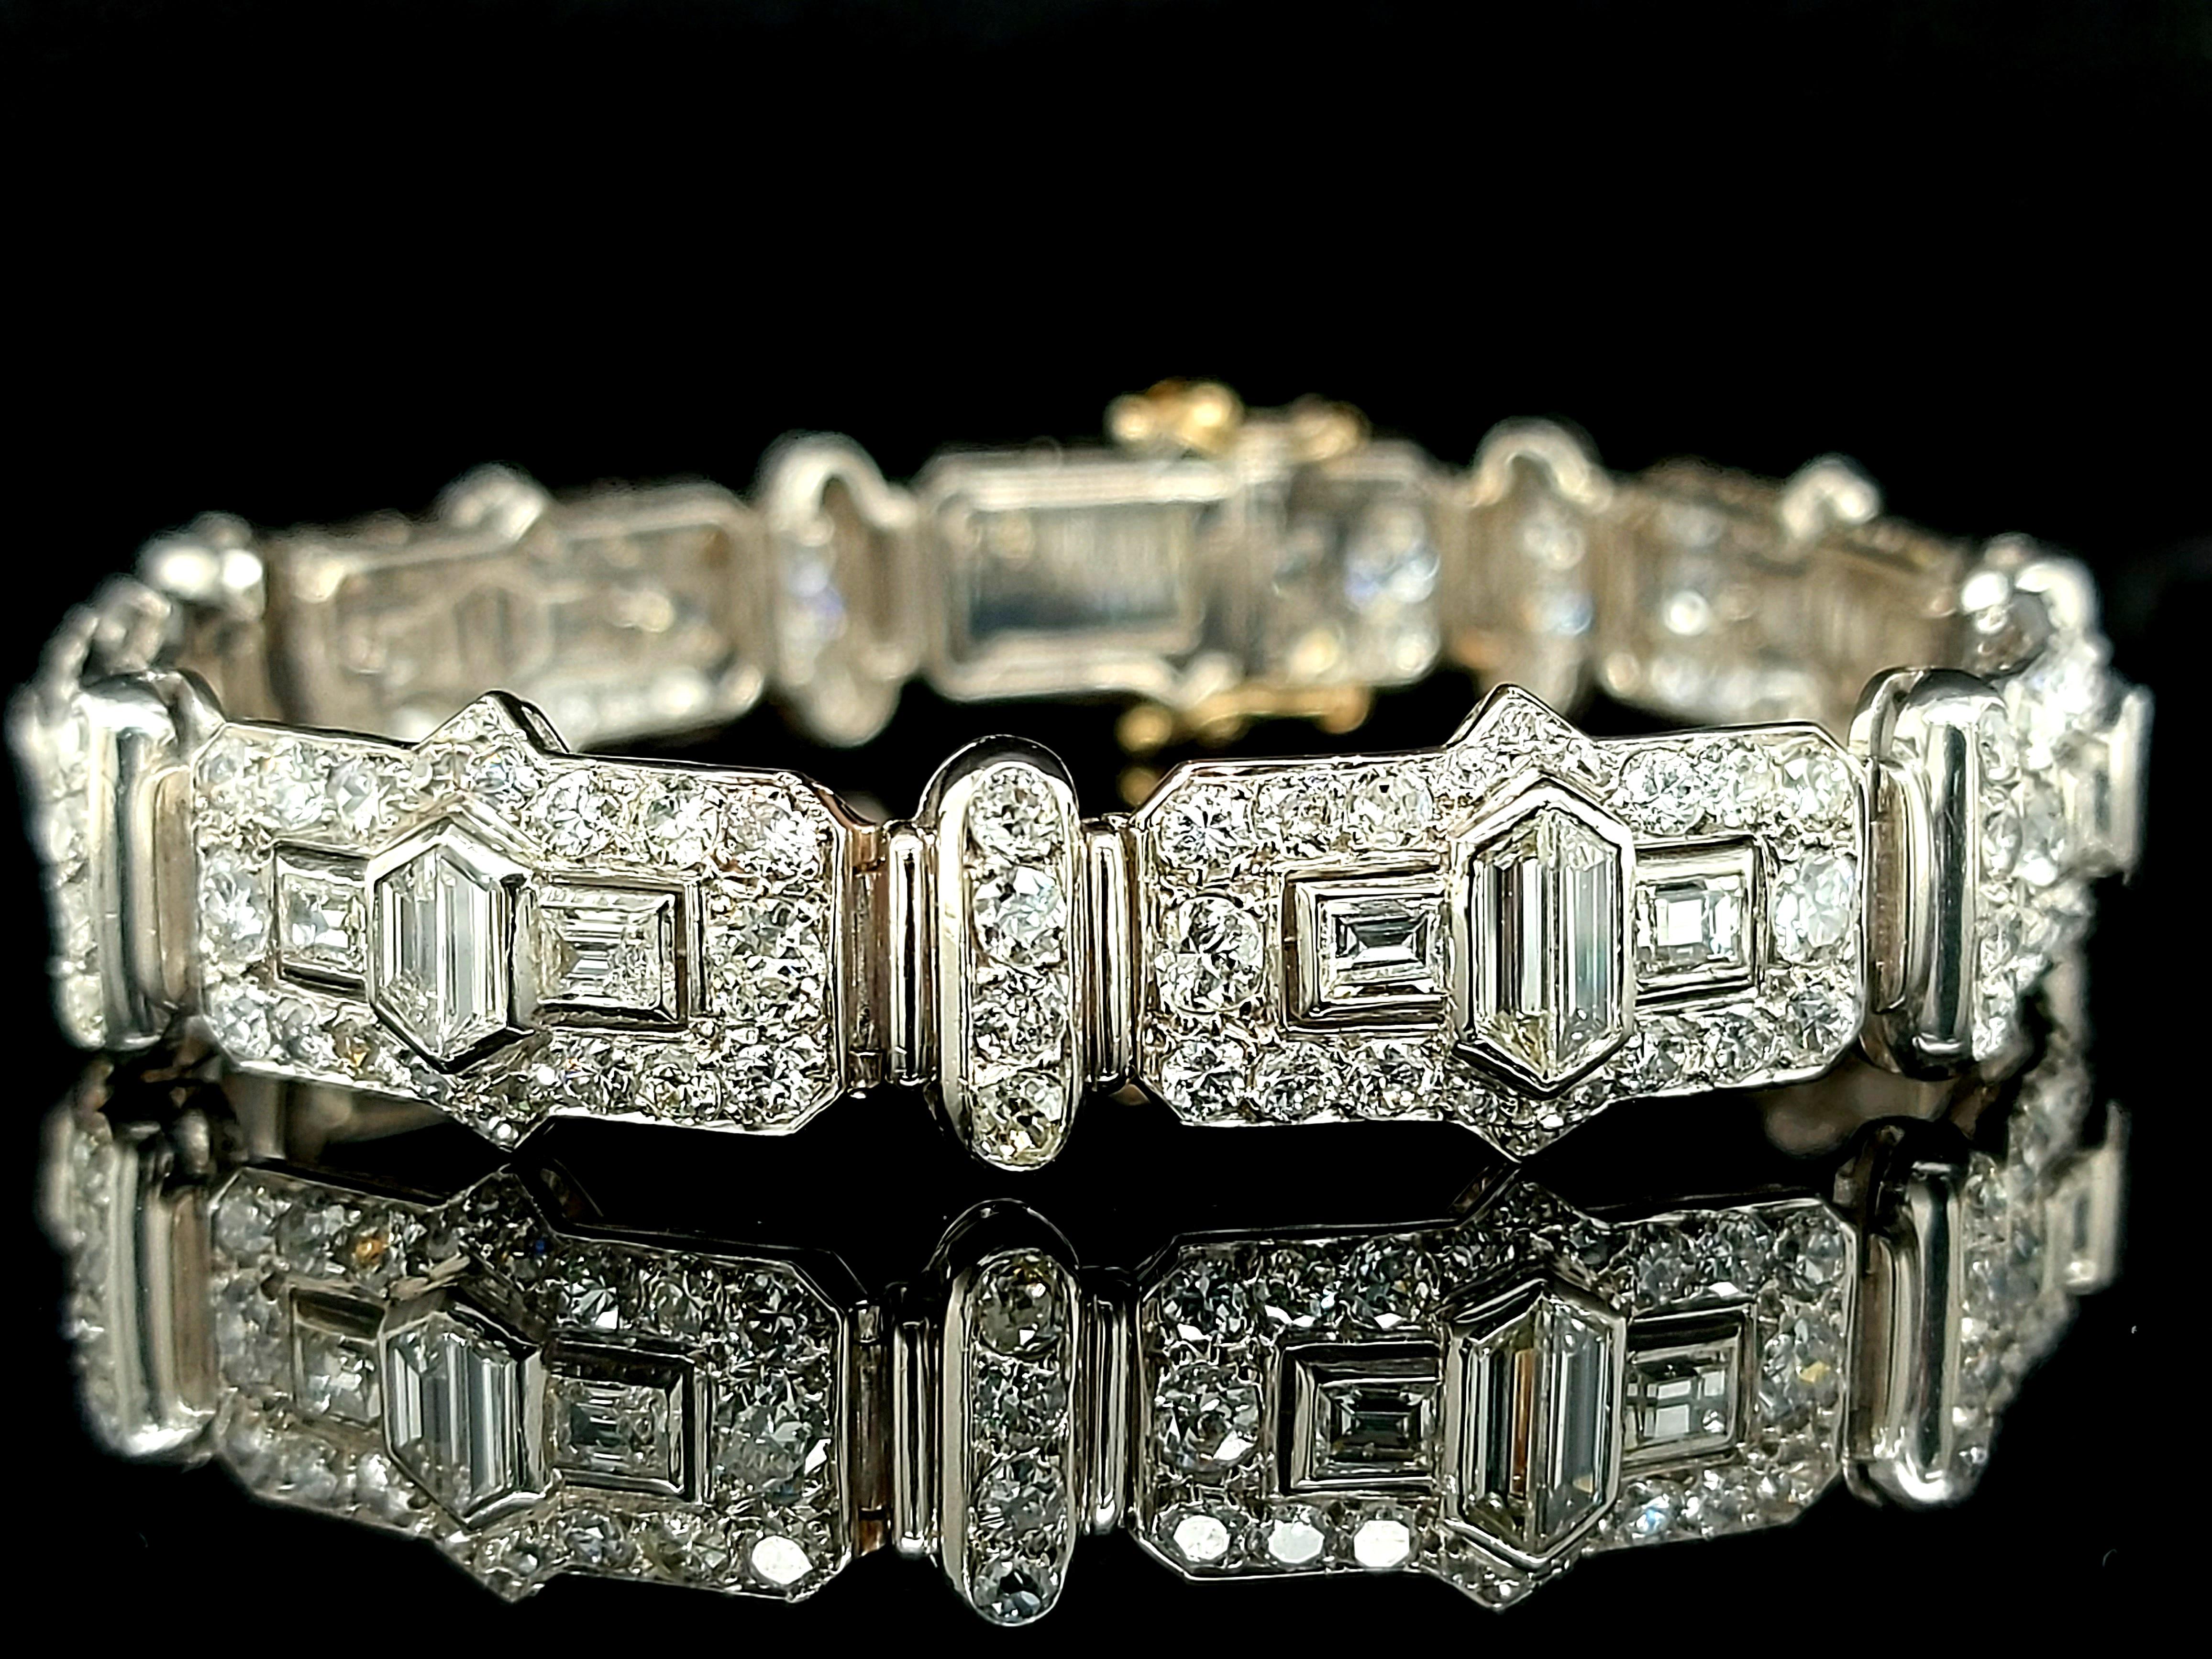 Magnifique bracelet en or blanc 18 carats serti de diamants trapèze, émeraude et taille ancienne de 8 carats 

Diamants : Diamants de taille Trapèze et émeraude, ensemble environ 8 cts. 8 cts

Matériau : Platine

Poinçon : tête de chien

Mesures :